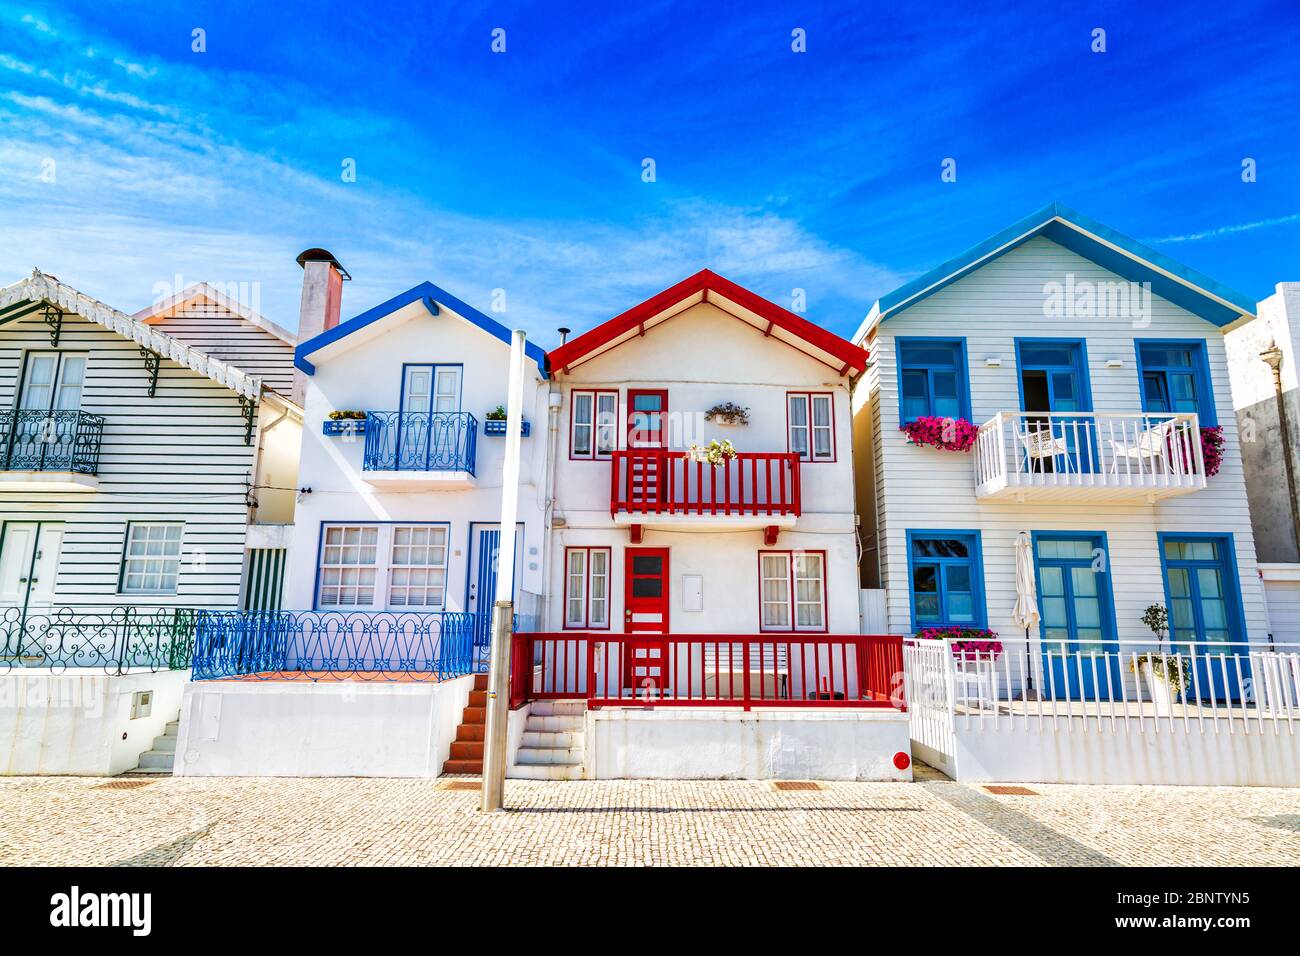 Costa Nova, Portugal: Maisons rayées colorées appelées Palheiros situé dans la station balnéaire sur la côte atlantique près d'Aveiro. Banque D'Images